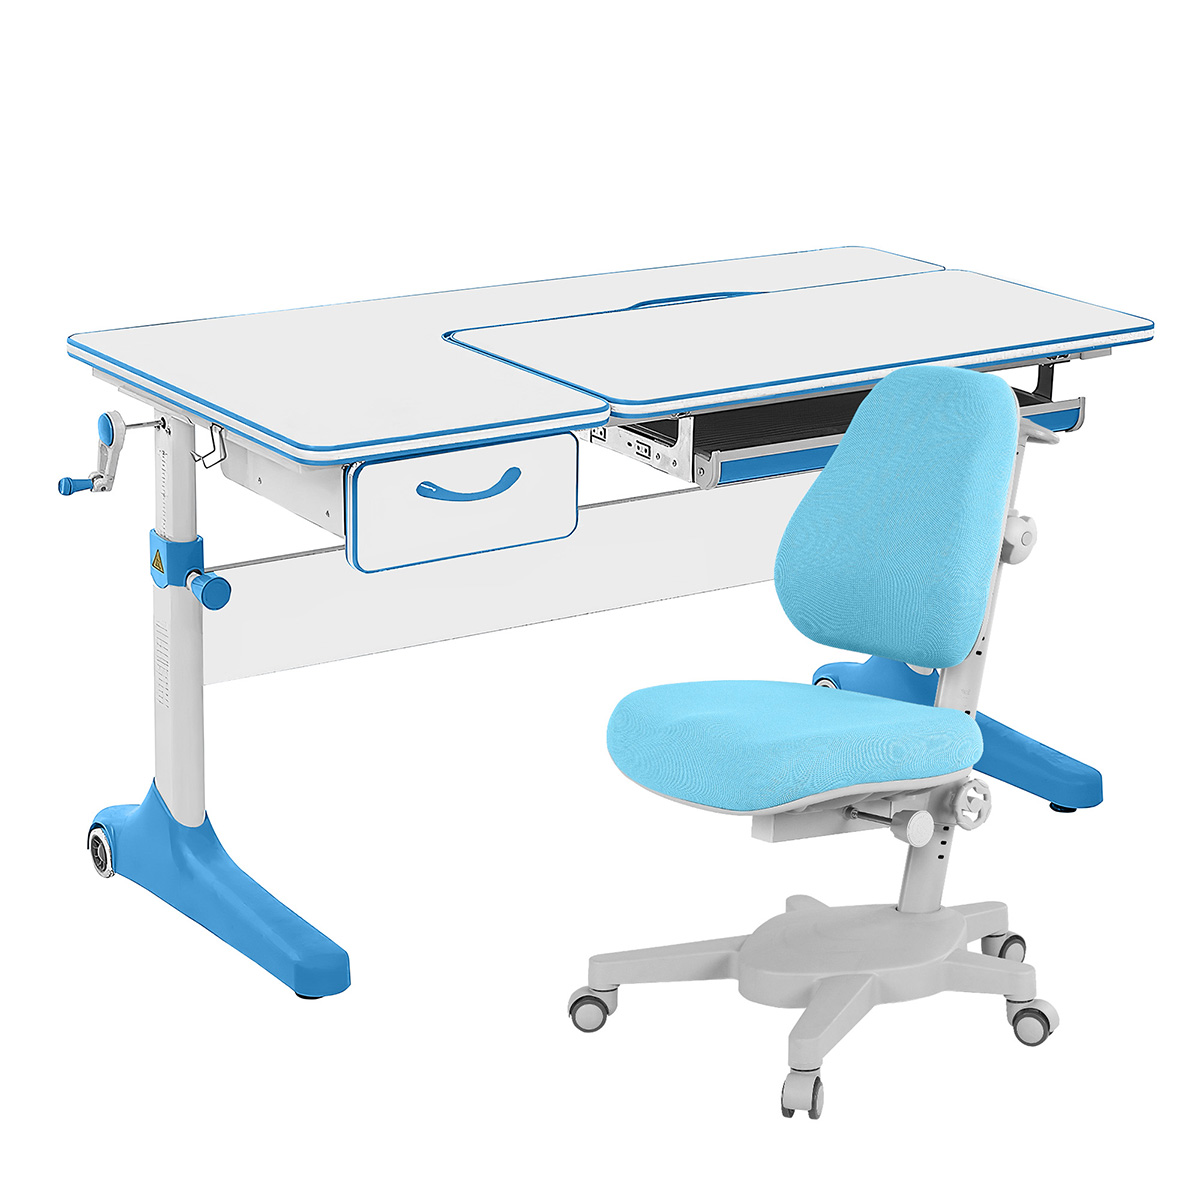 Комплект парта Anatomica Uniqa Lite белый/голубой с голубым креслом Armata комплект kinderzen парта dali plus с креслом armata